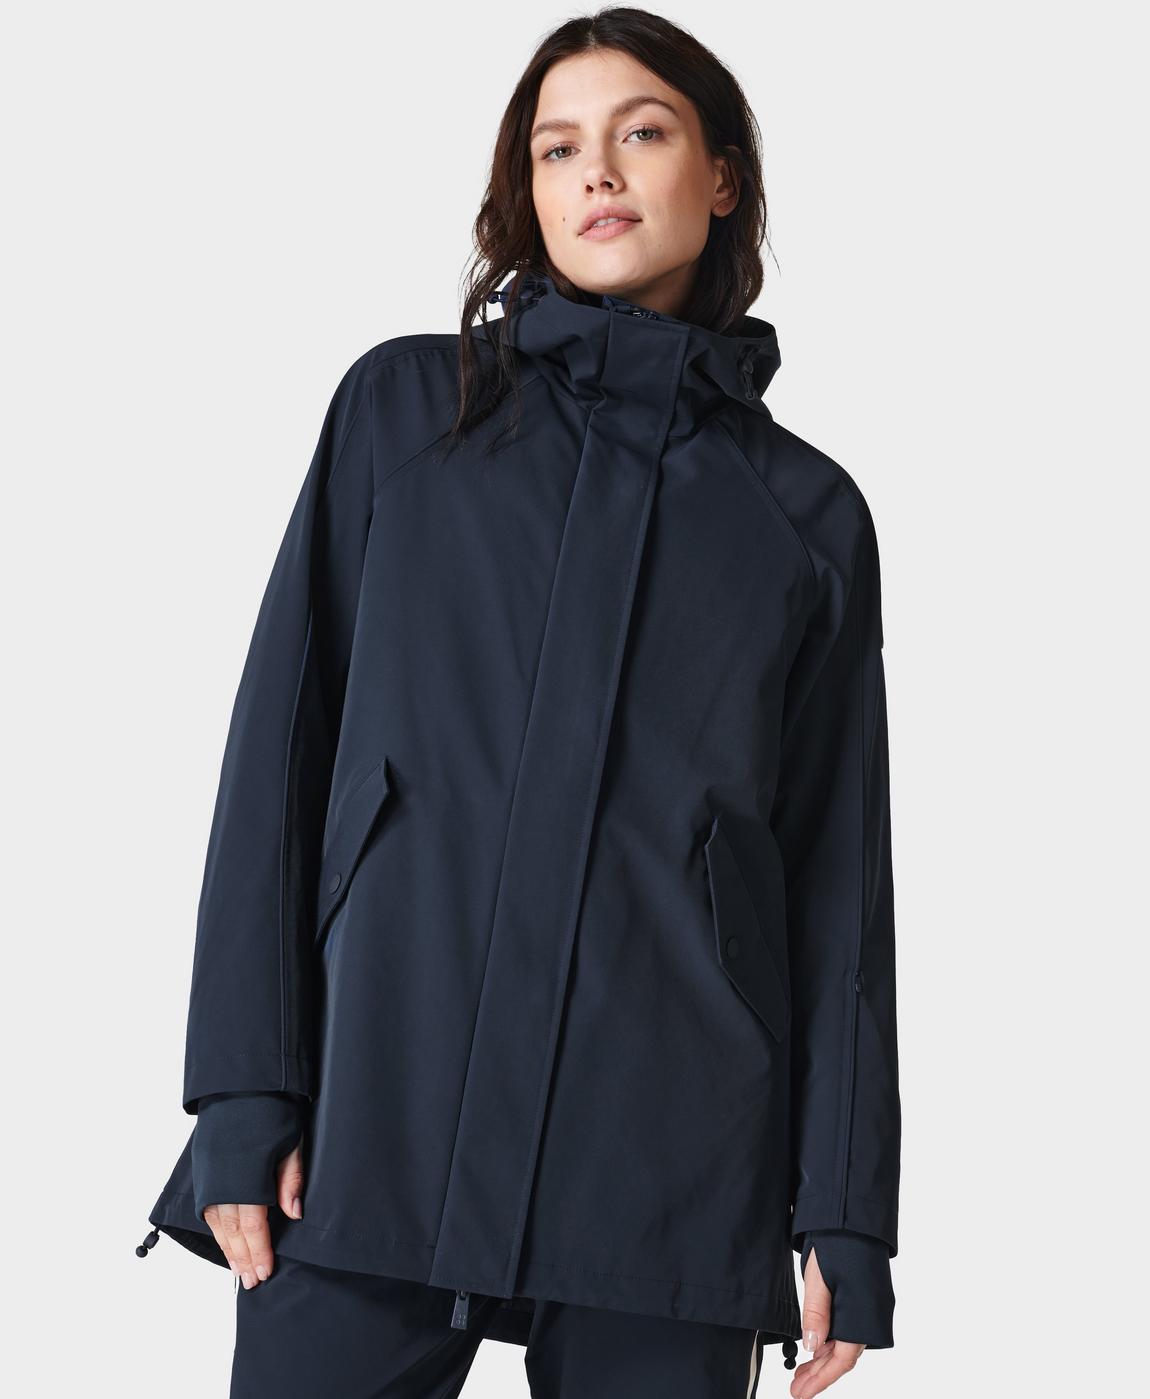 Alpine Ski Jacket - Navy Blue | Women's Ski Clothes | Sweaty Betty